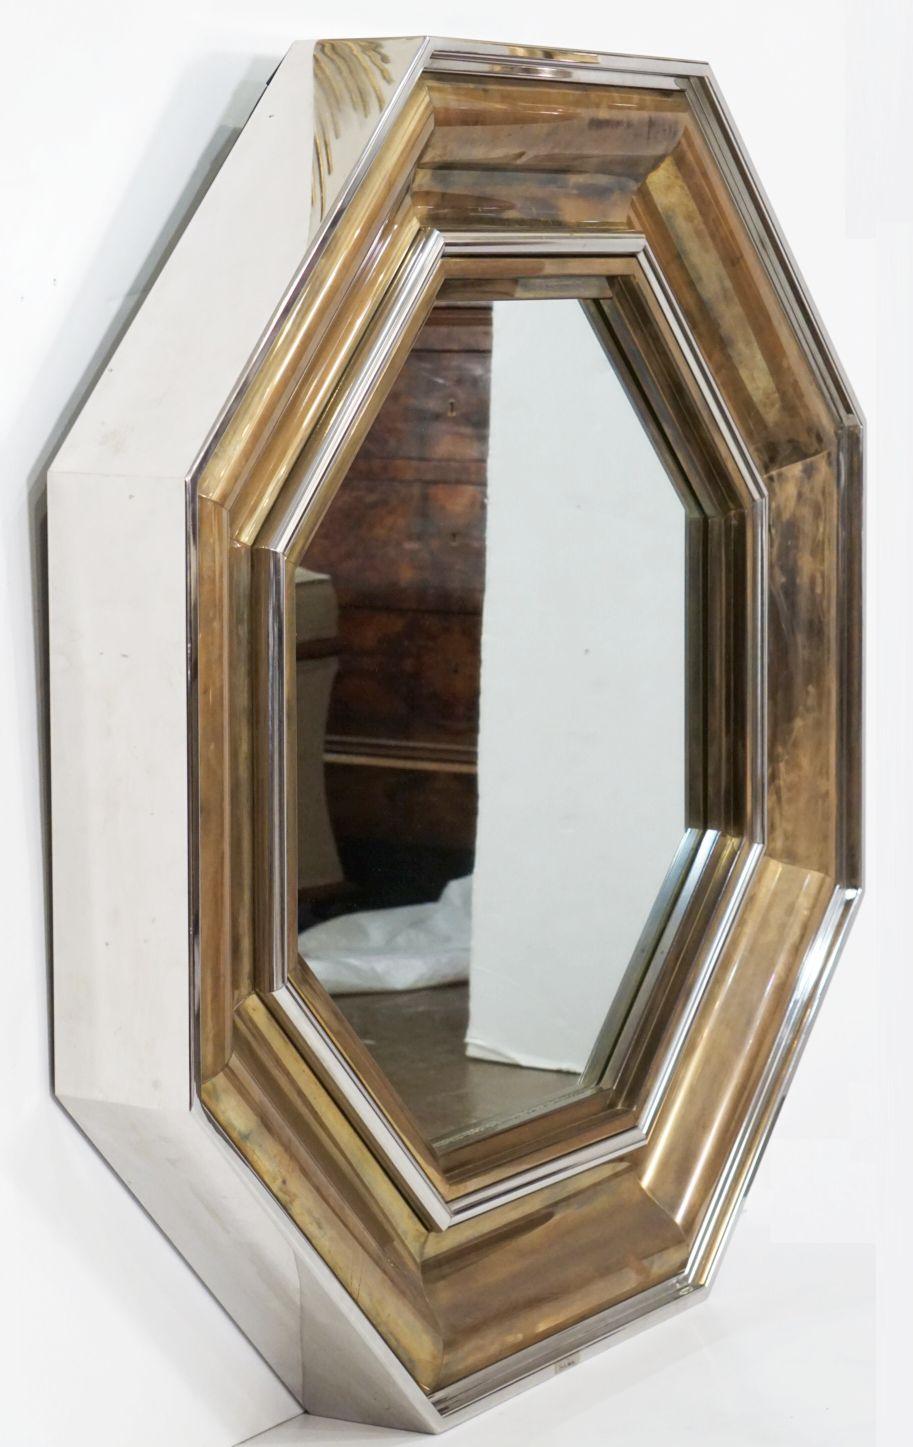 Magnifique grand miroir octogonal italien en laiton et chrome - conçu par le célèbre architecte italien Sandro Petti pour la Maison Jansen et produit par L'angolo Metallarte dans les années 1970.
Le cadre présente une alternance chic de couches de